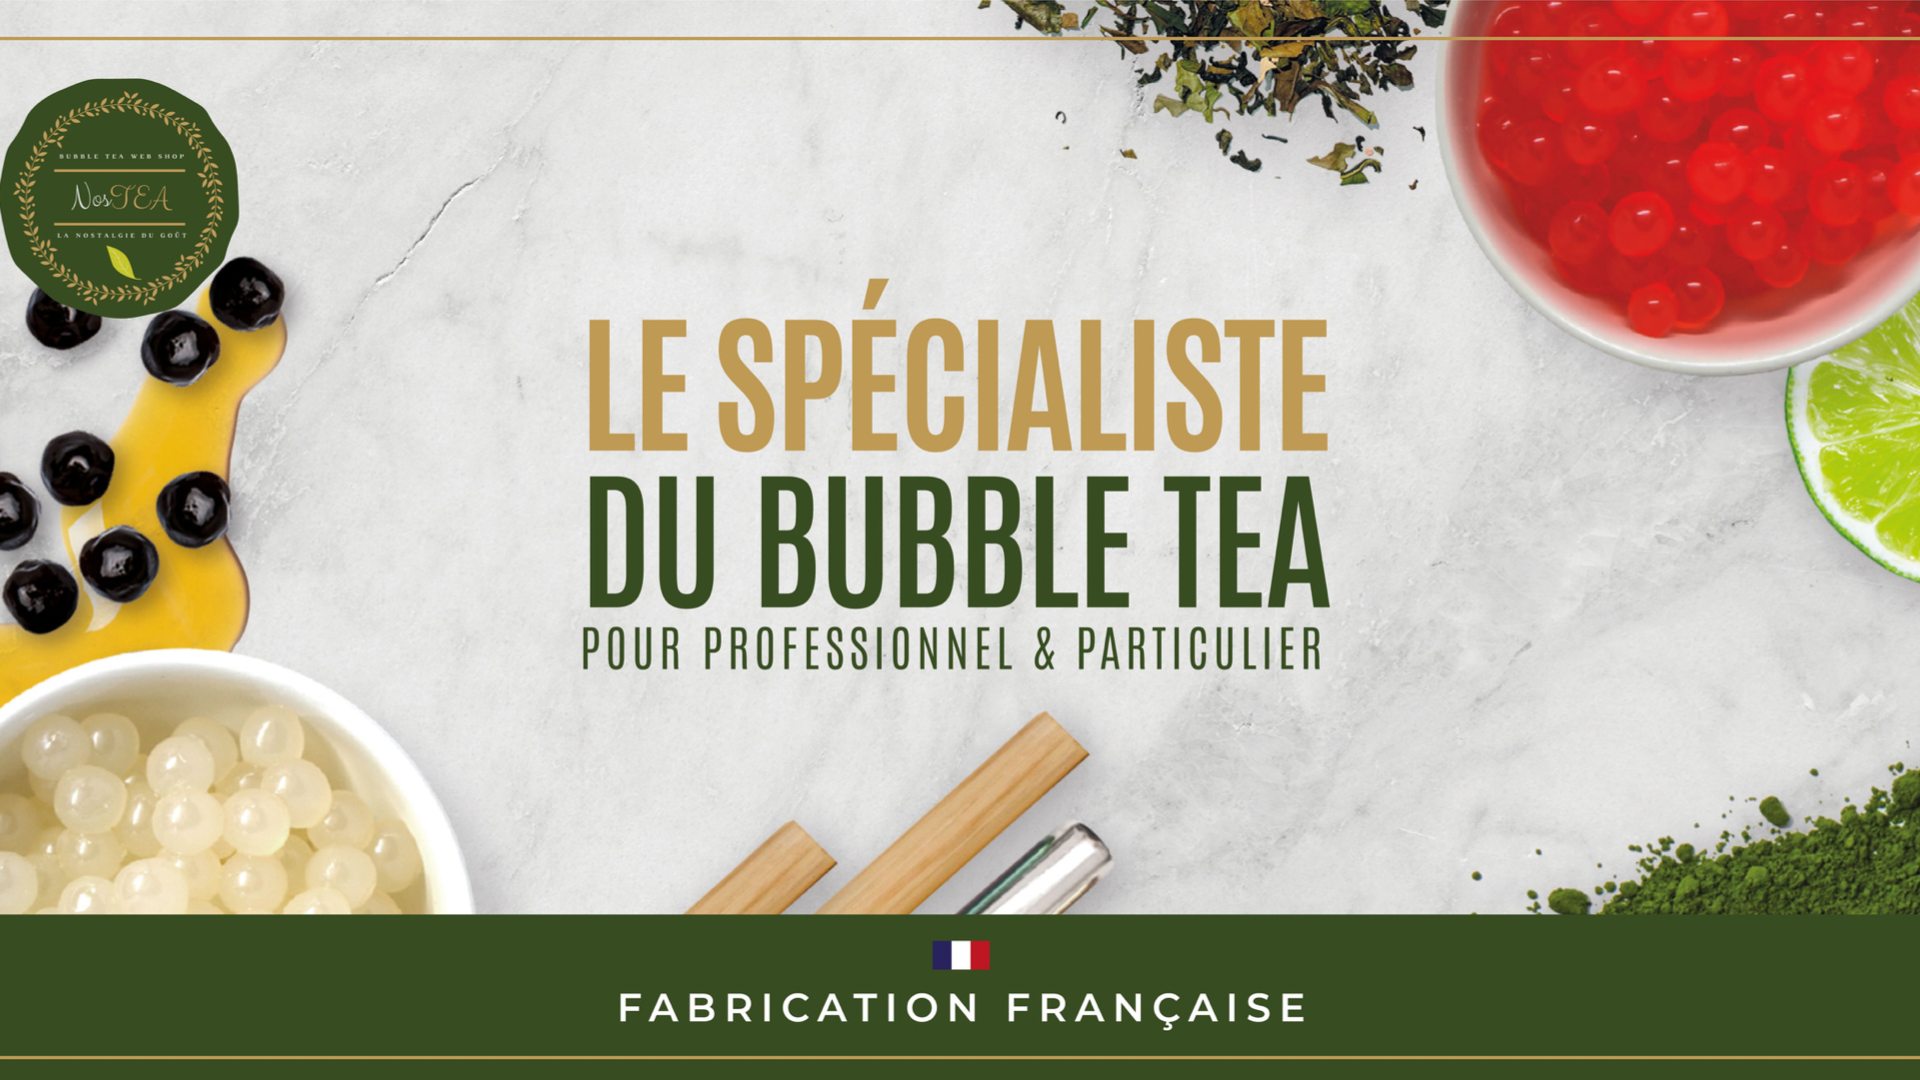 Nostea fournisseur professionnel du Bubble Tea